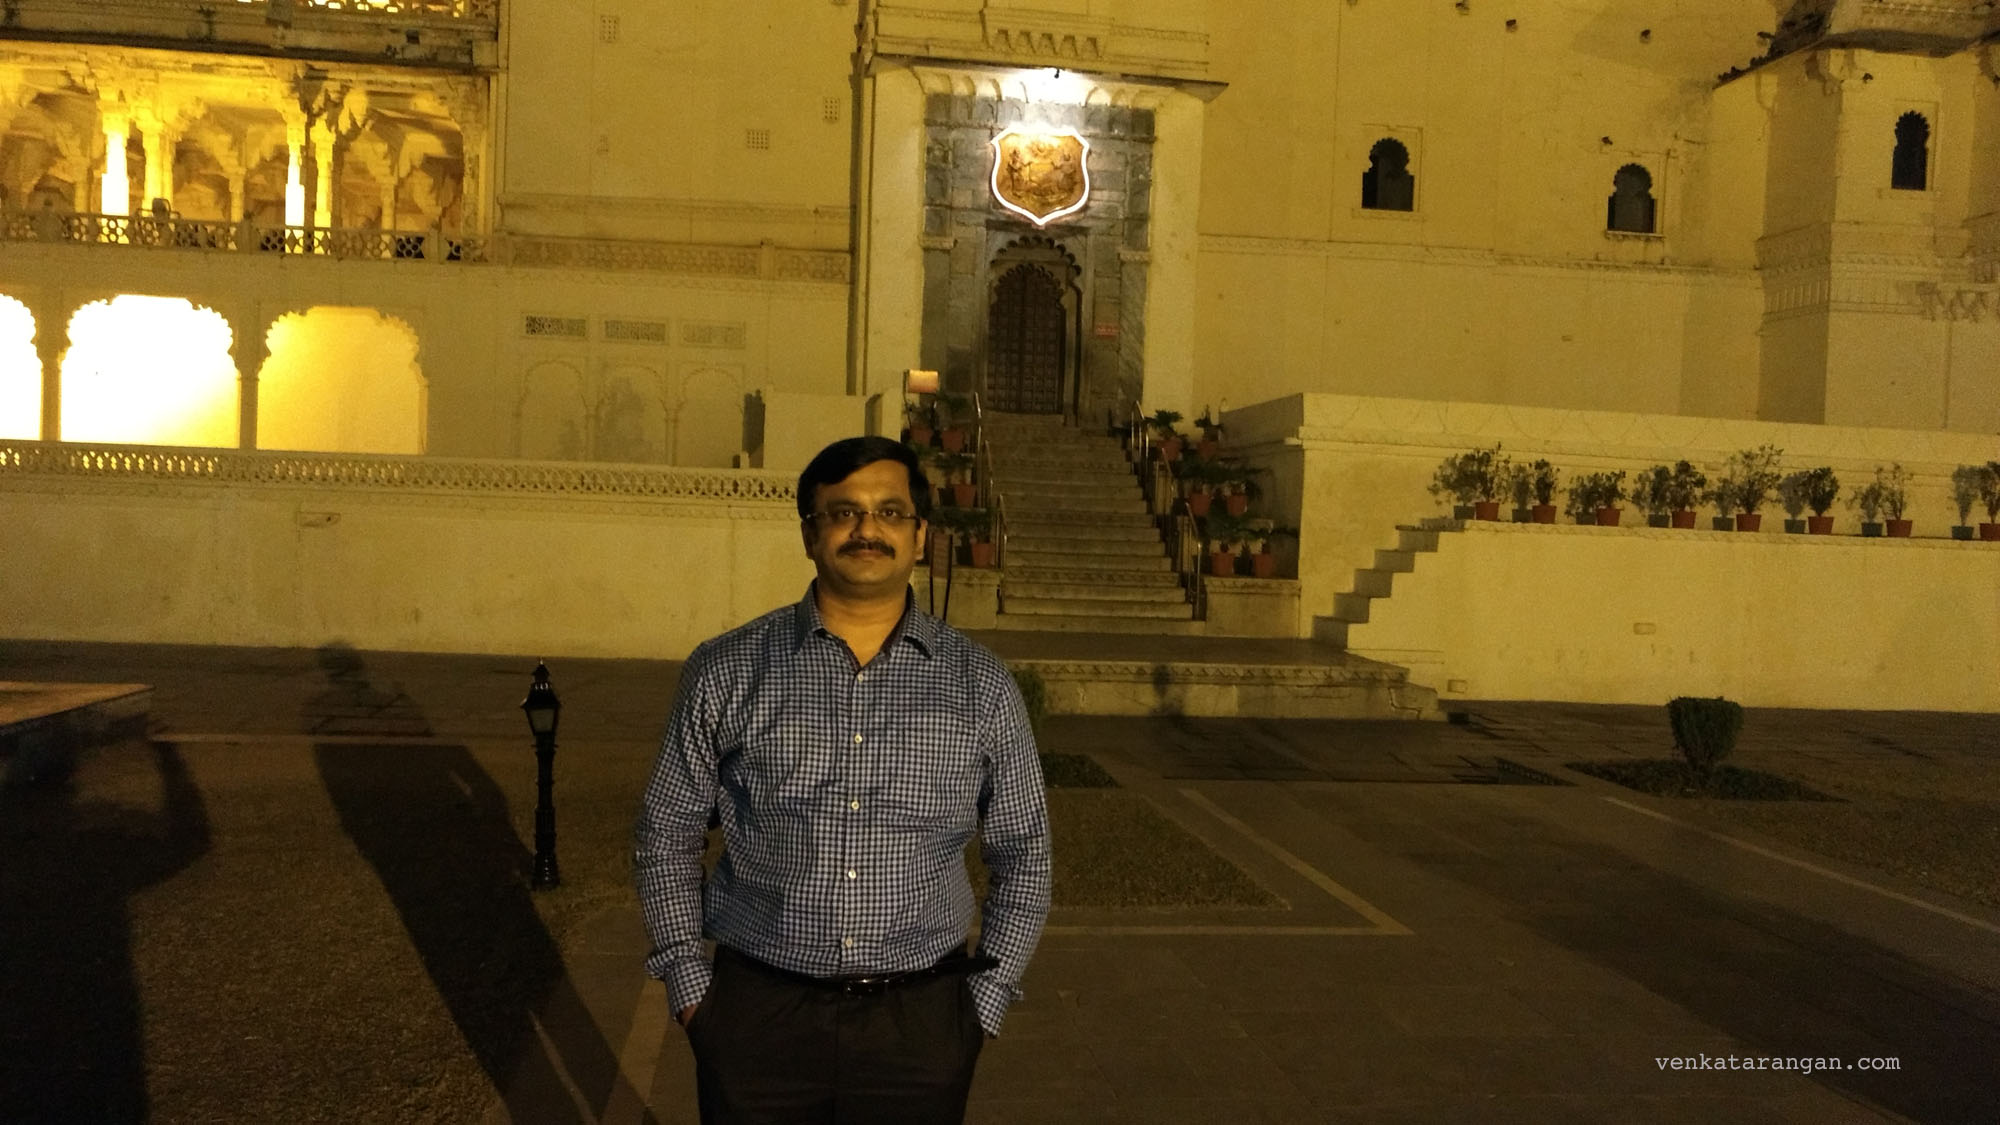 Venkatarangan in front of the City Palace of Udaipur at night